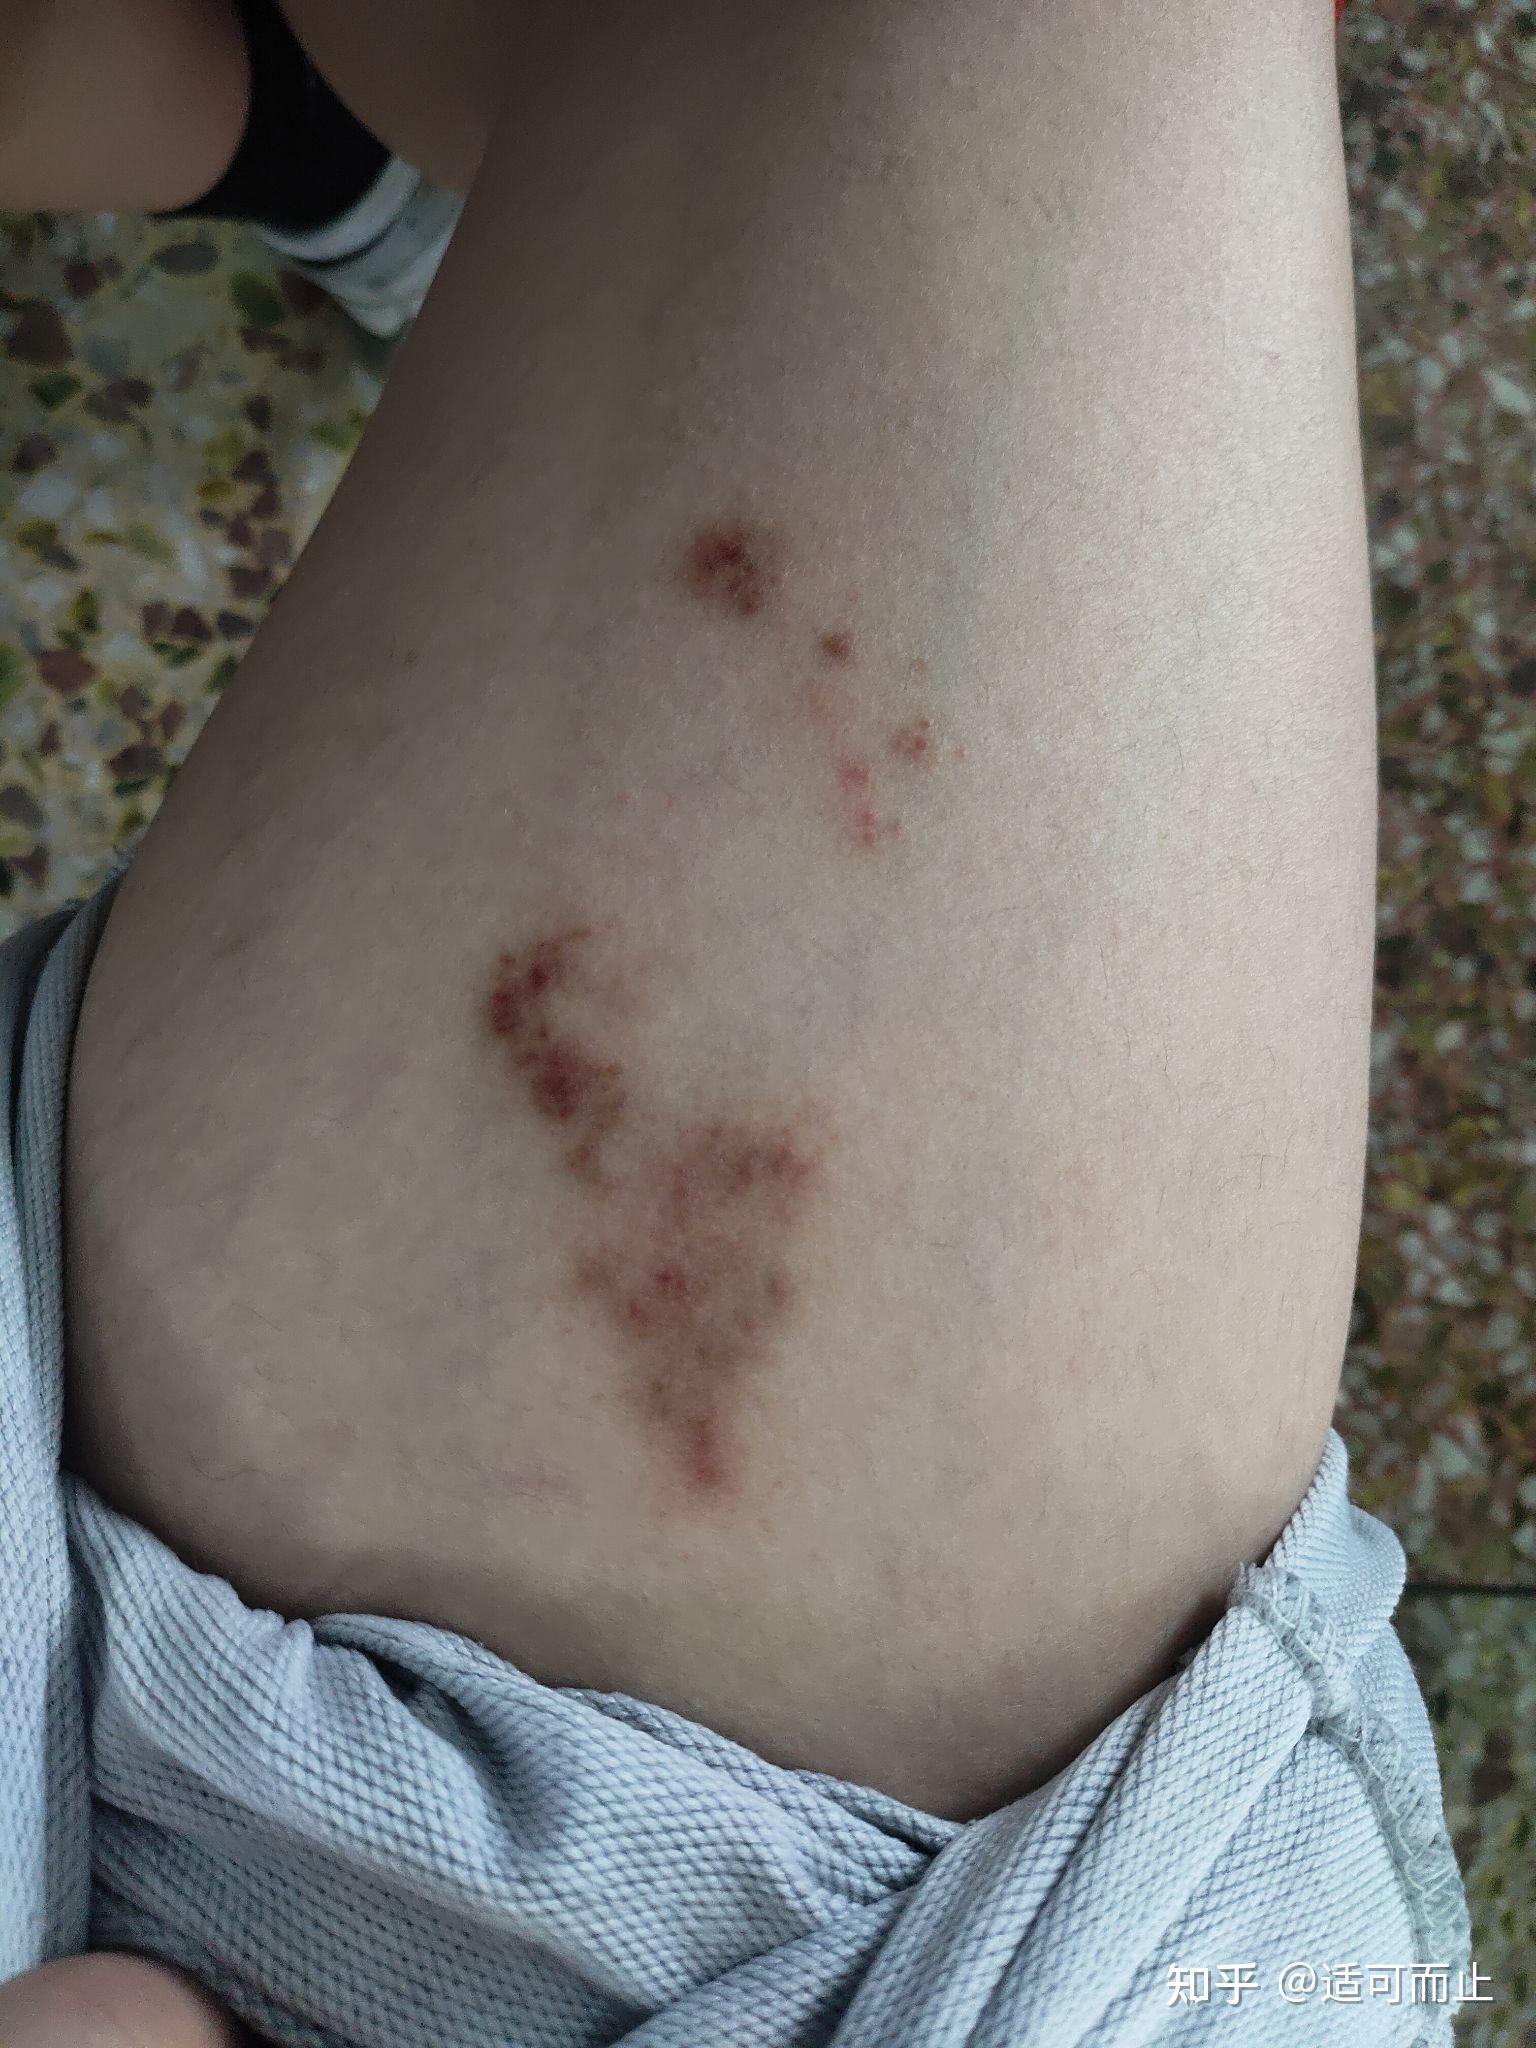 腿上长了一片不痛不痒的红块,这是什么皮肤病? 